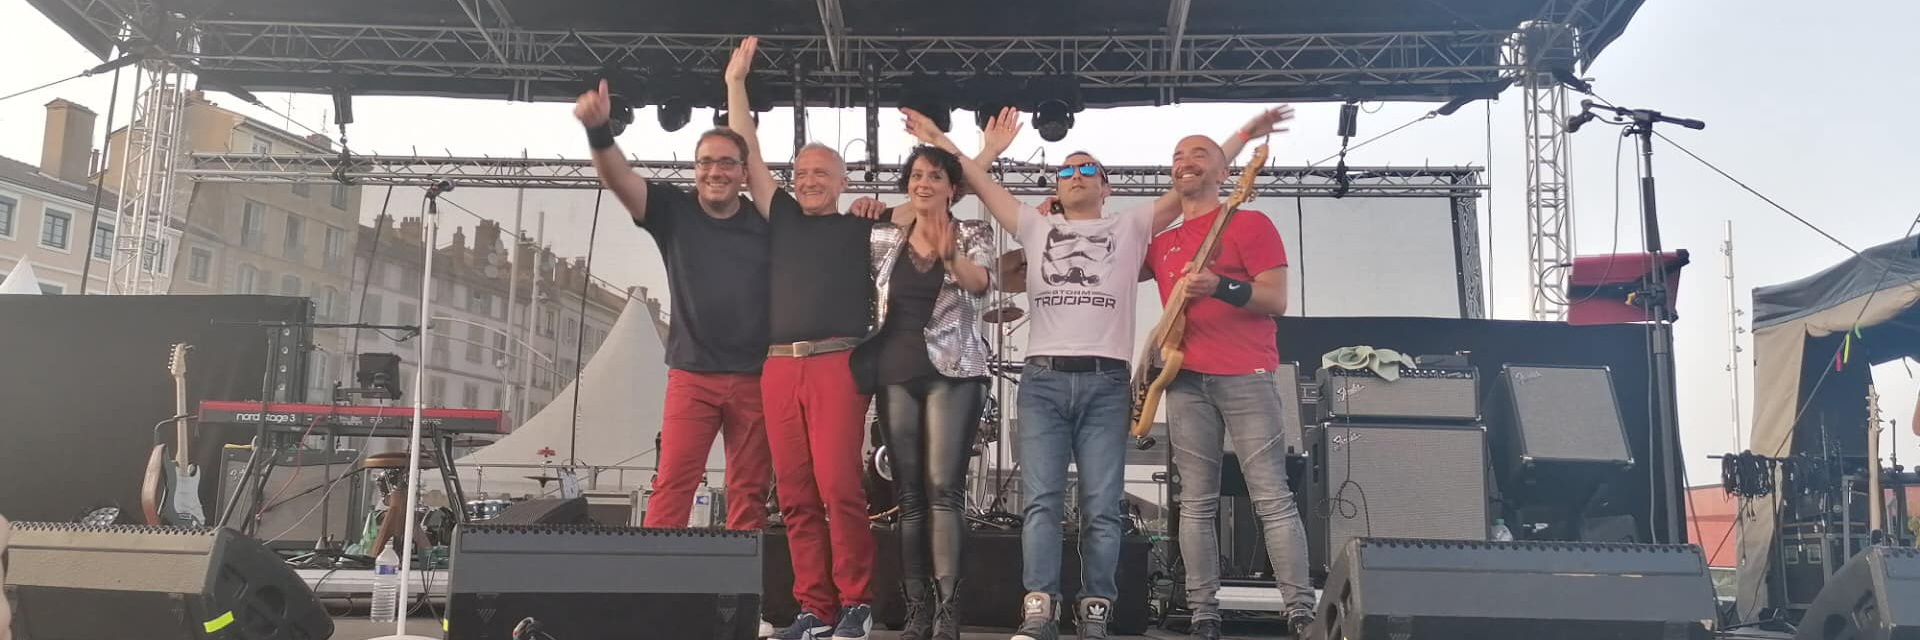 MUSERS, groupe de musique Rock en représentation à Saône et Loire - photo de couverture